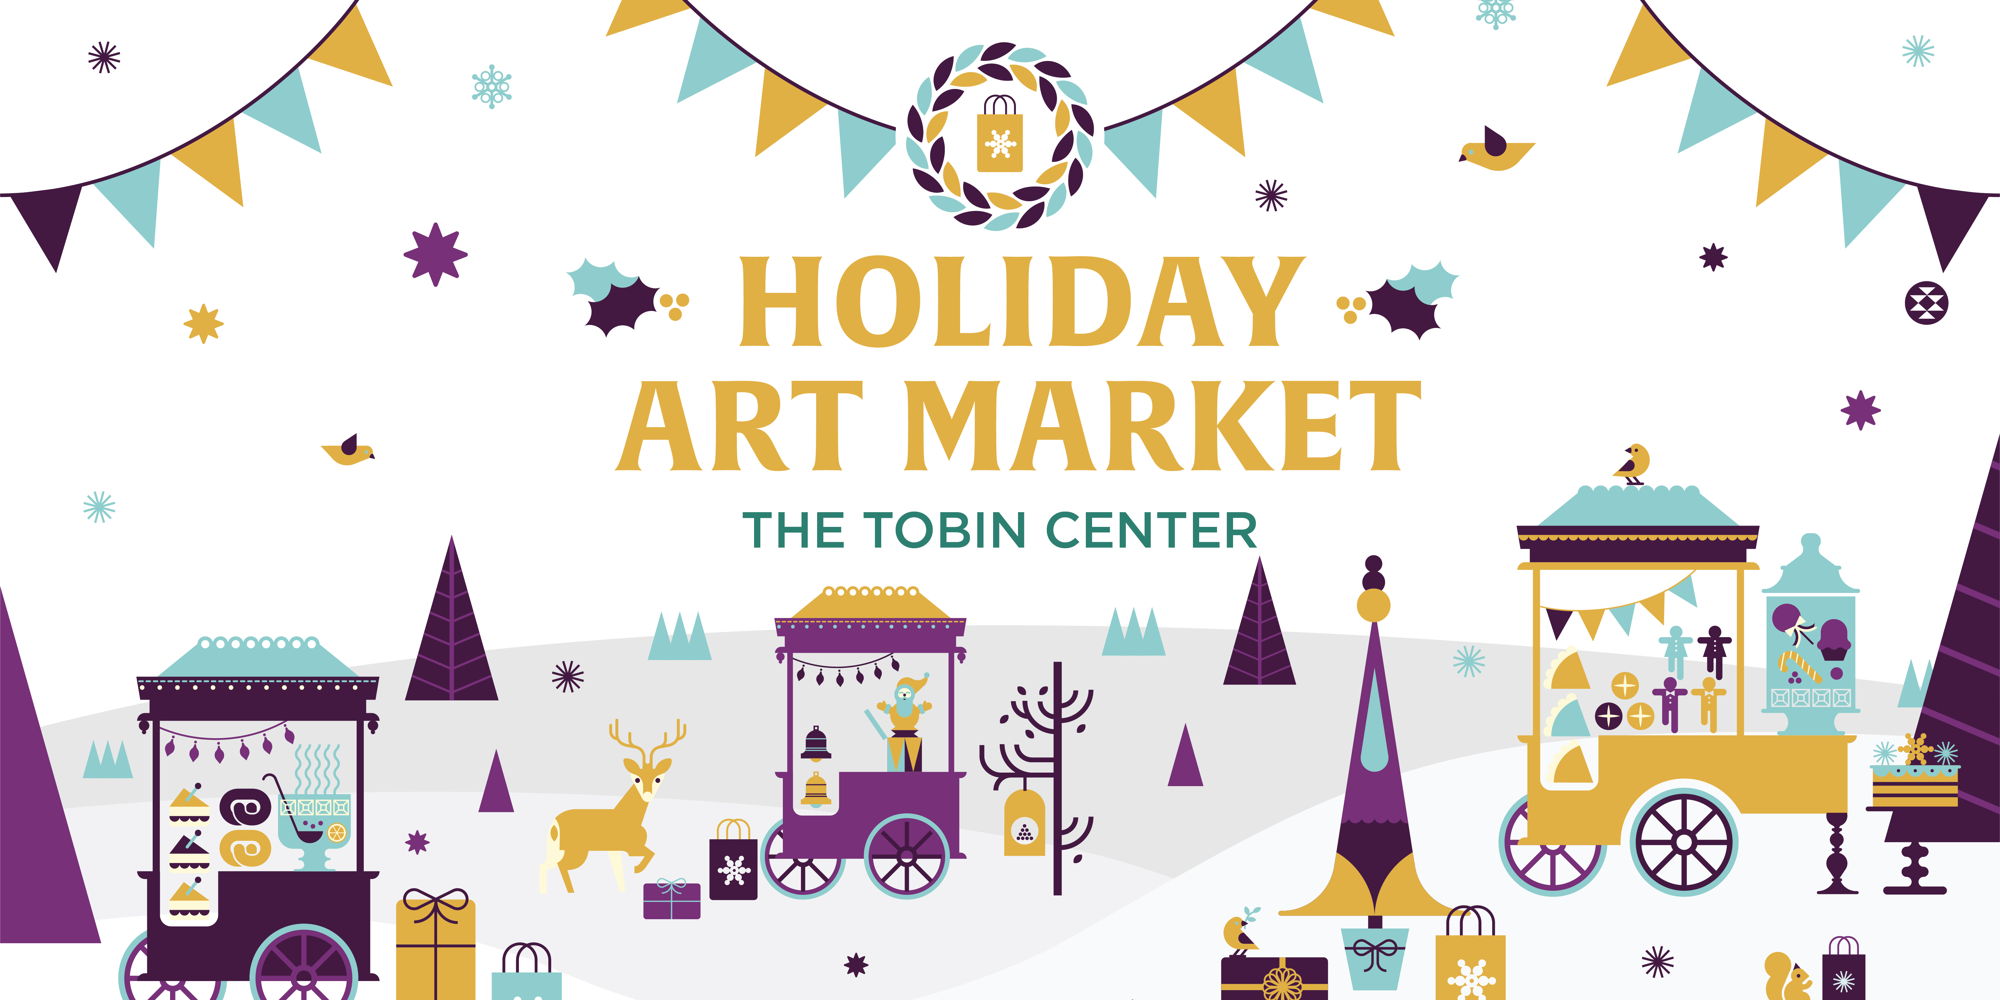 Holiday Art Market promotional image